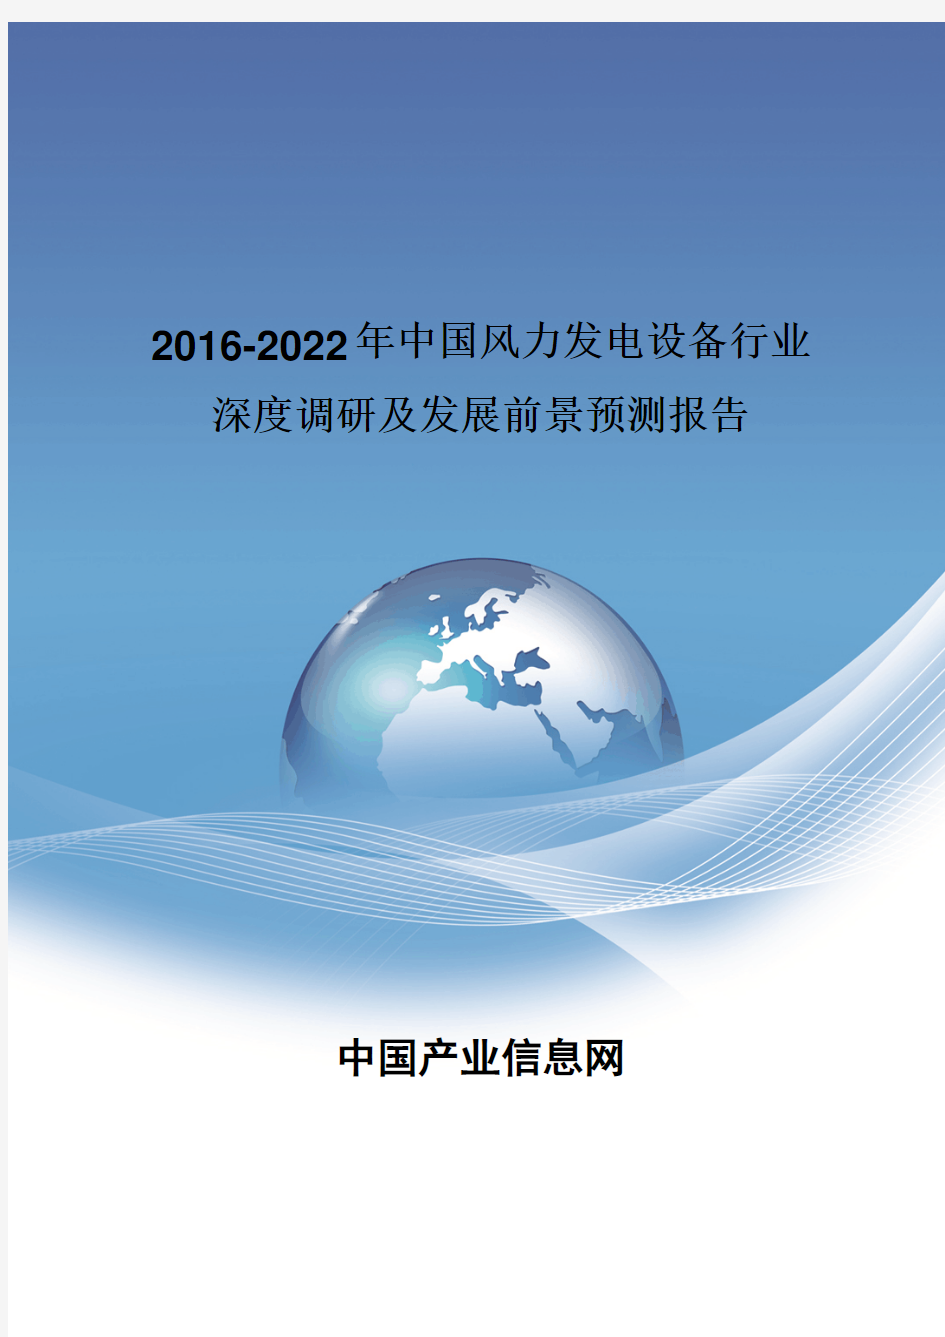 2016-2022年中国风力发电设备行业深度调研报告